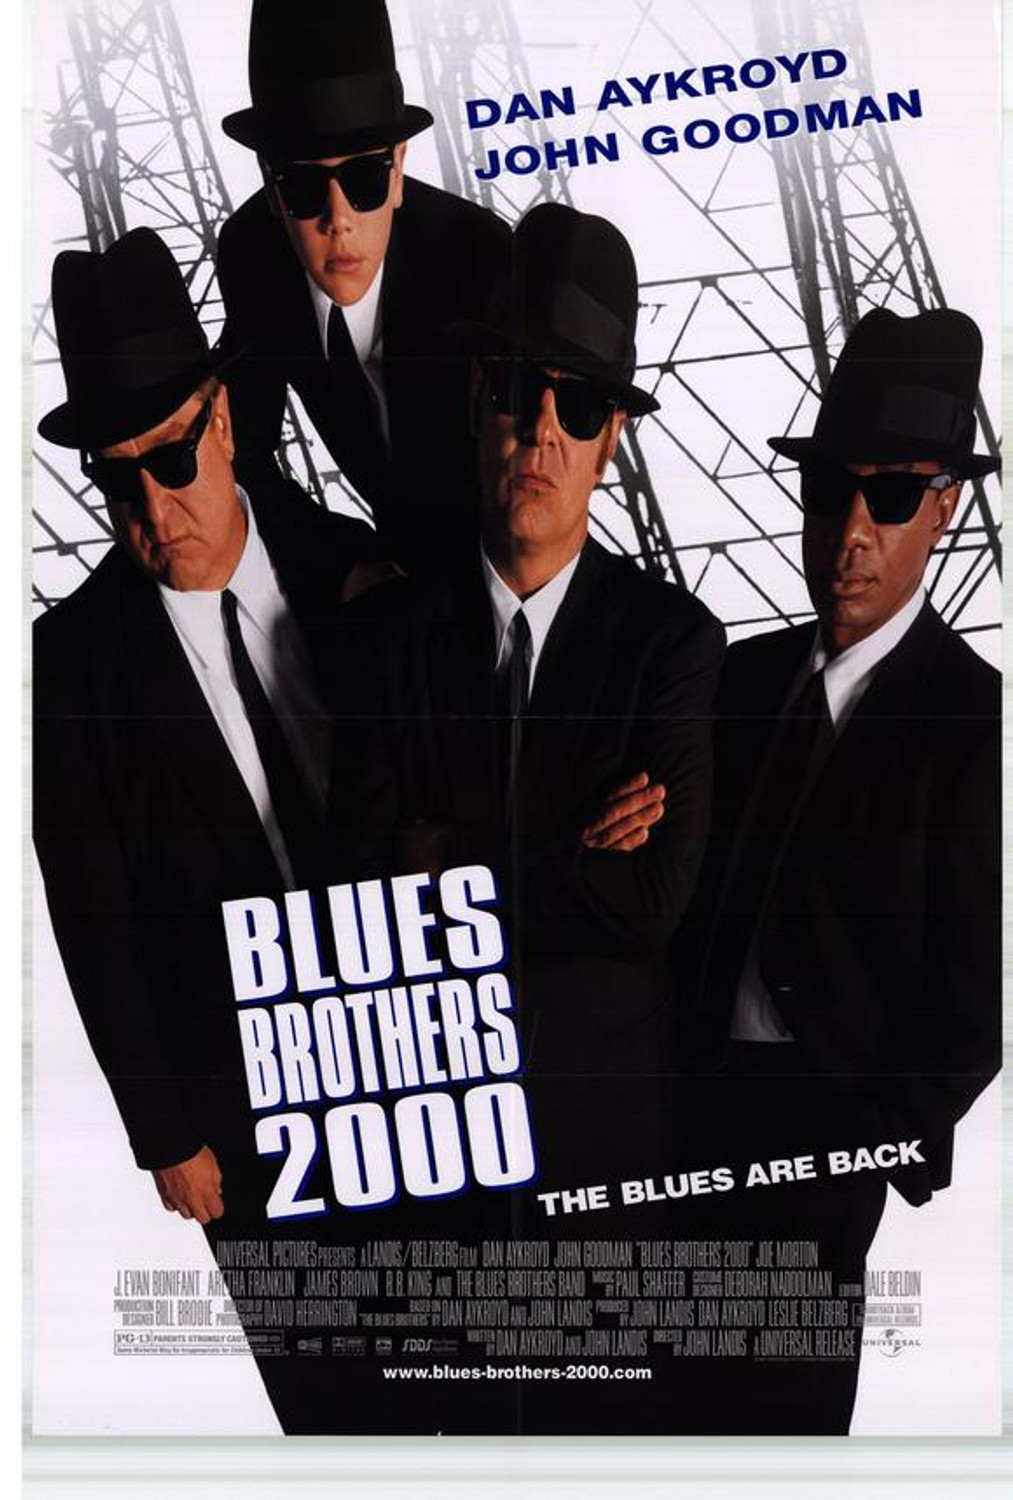 SS728611) AFFICHE BLUES BROTHERS 2000 acheter des affiches de films sur  Starstills.com